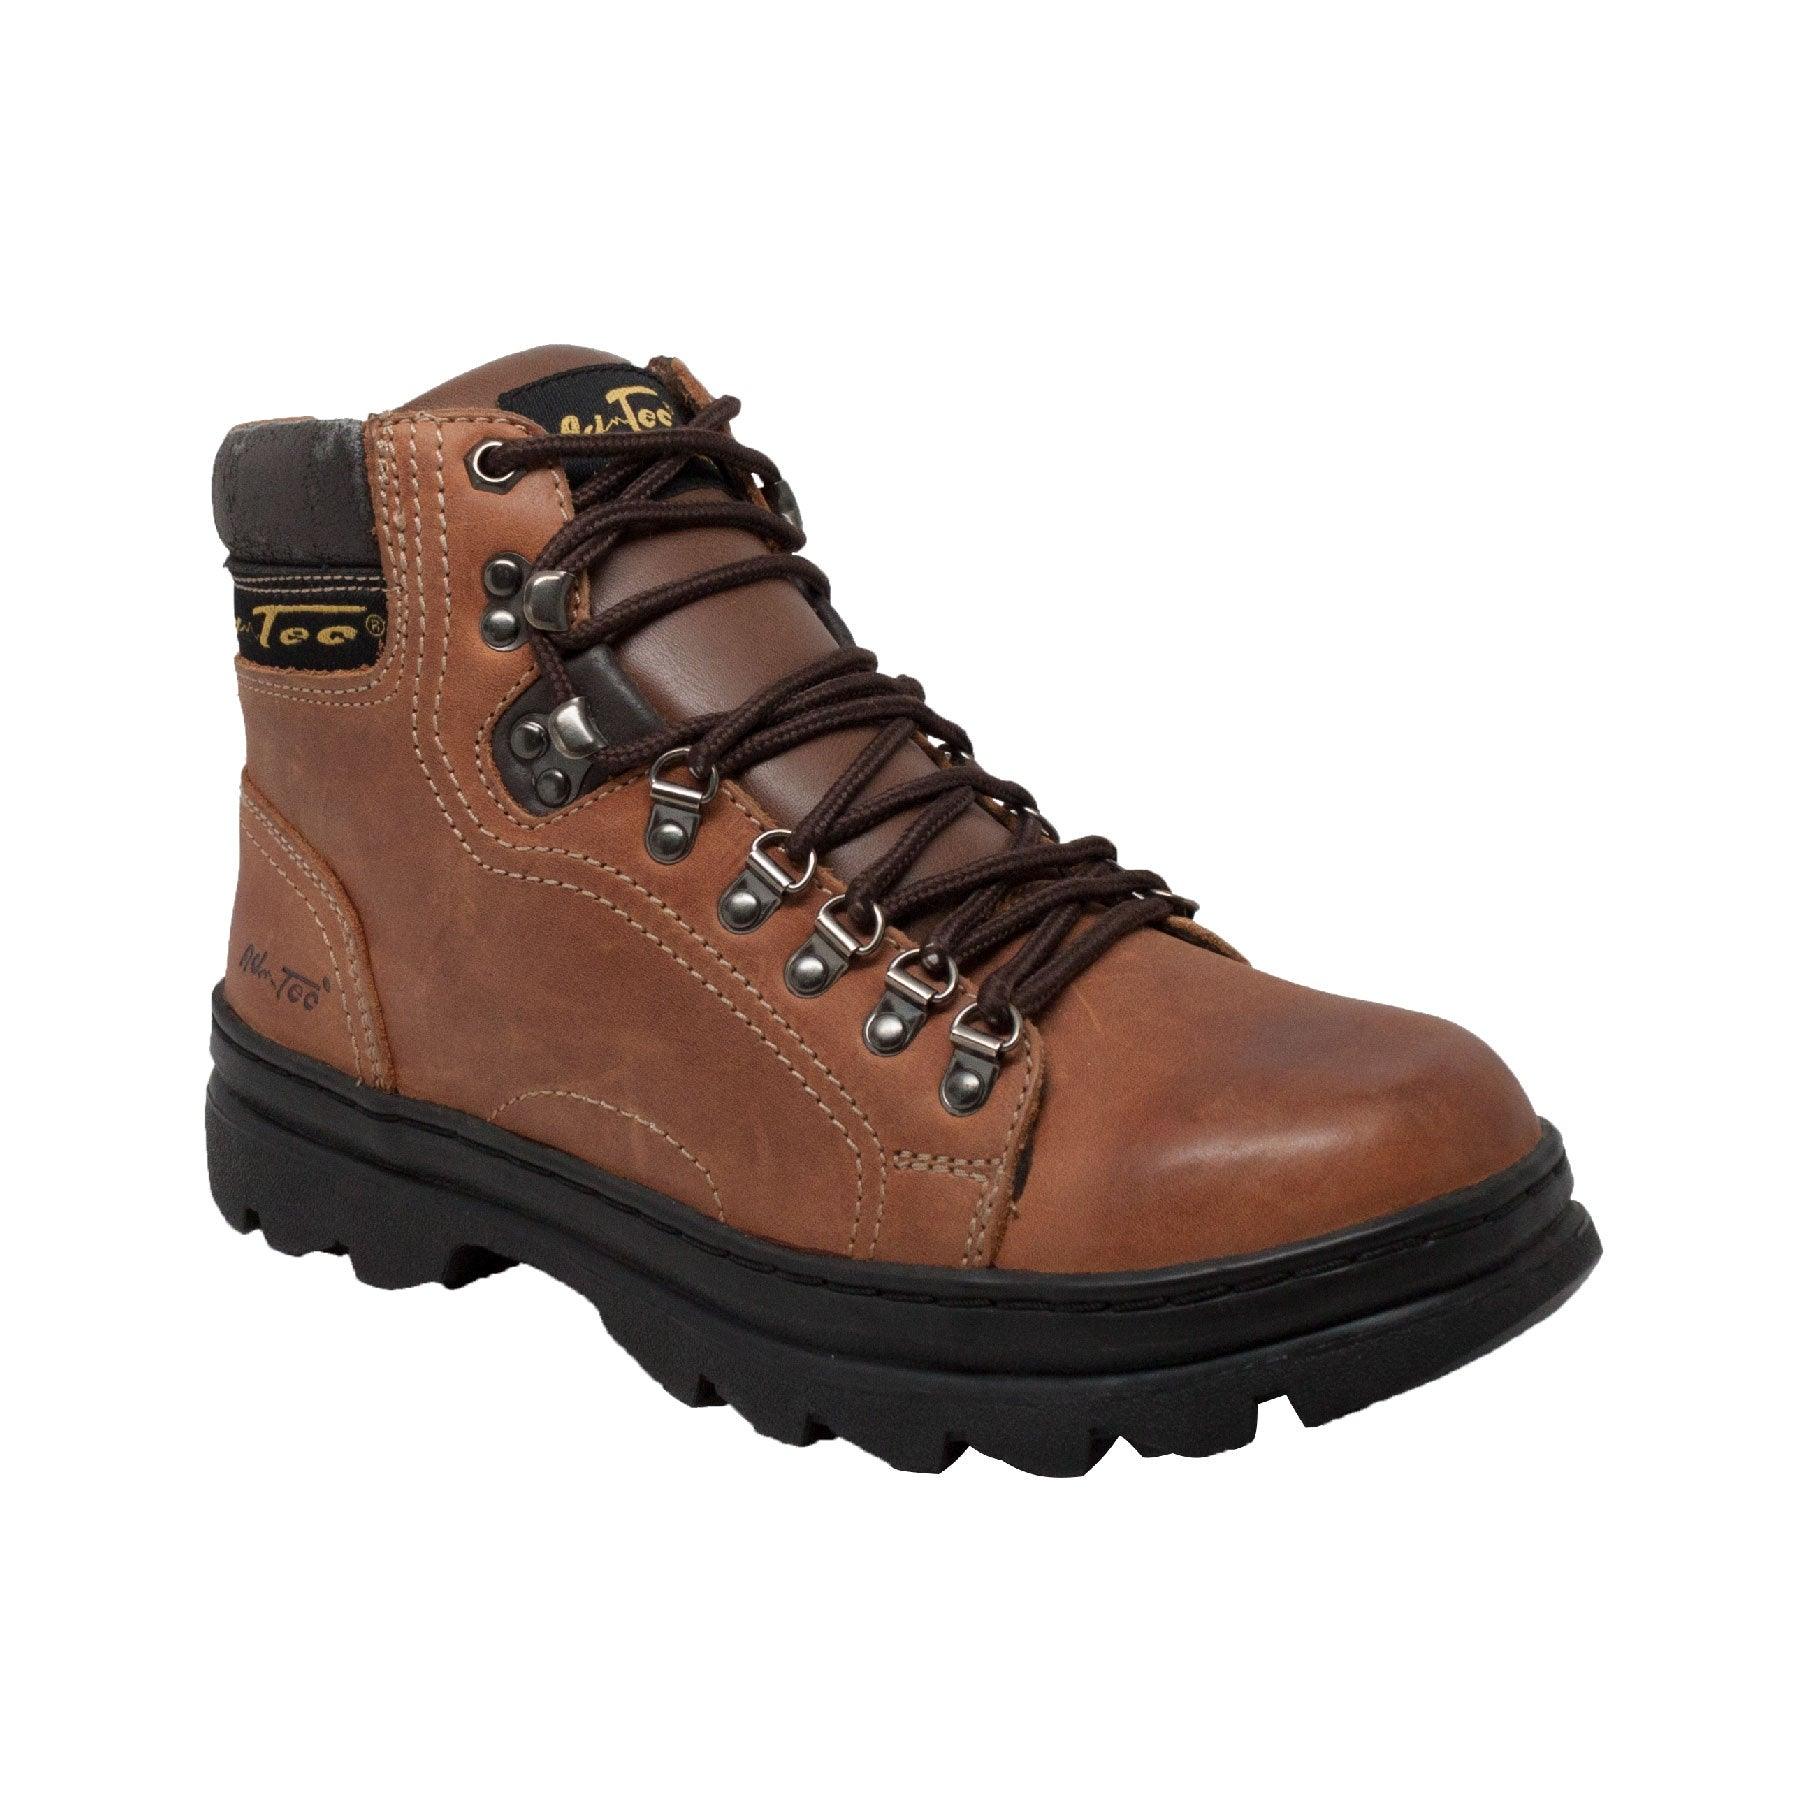 AdTec Men's 6" Hiker Boot Brown - Flyclothing LLC